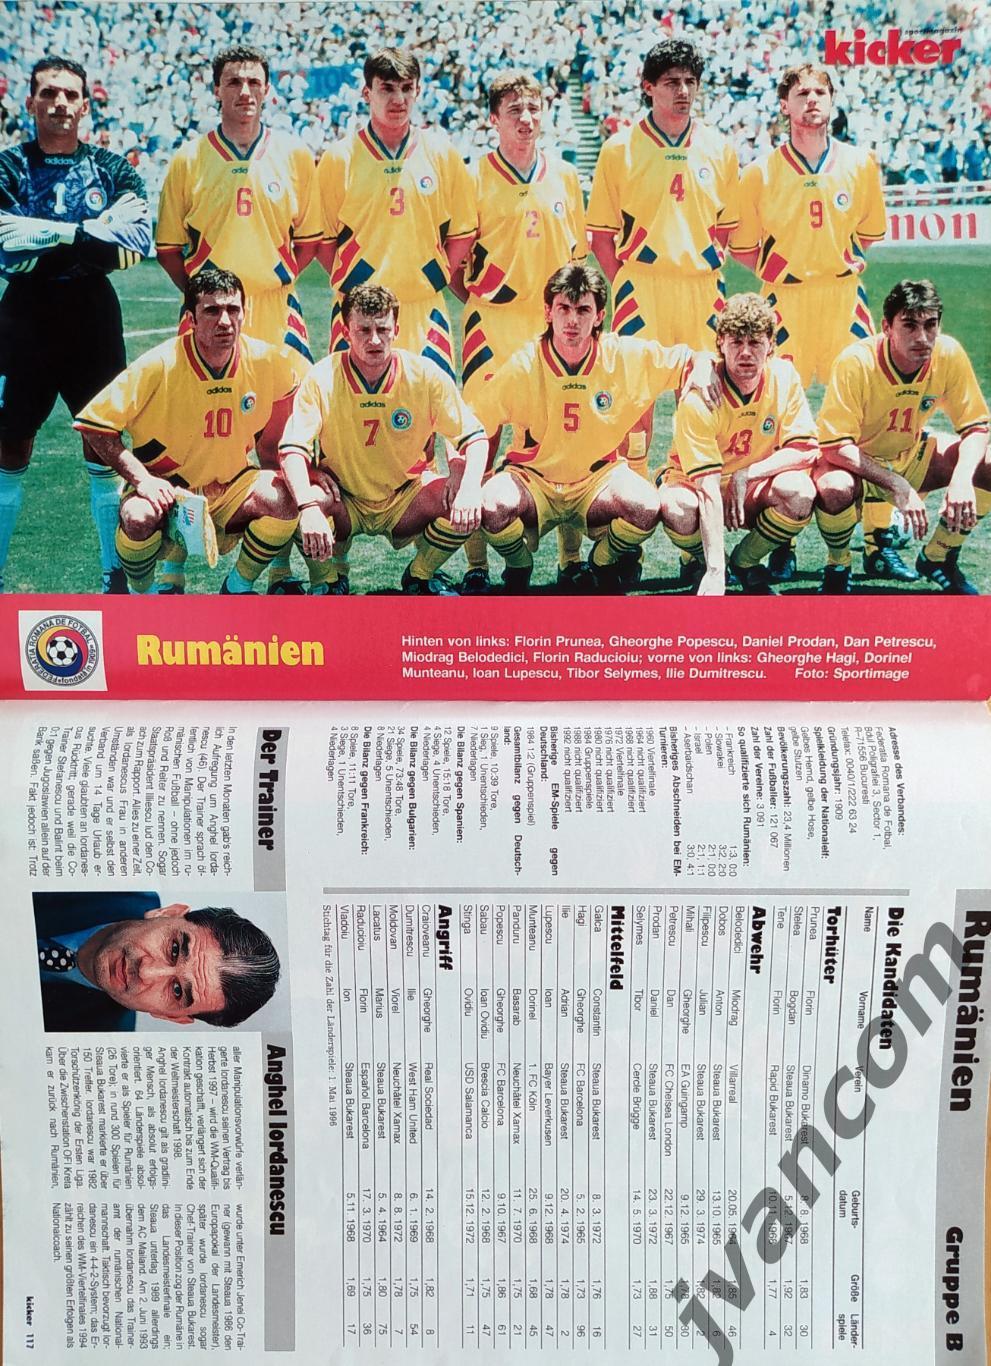 KICKER SONDERHEFT. Чемпионат Европы по футболу 1996 года. Превью участников. 5